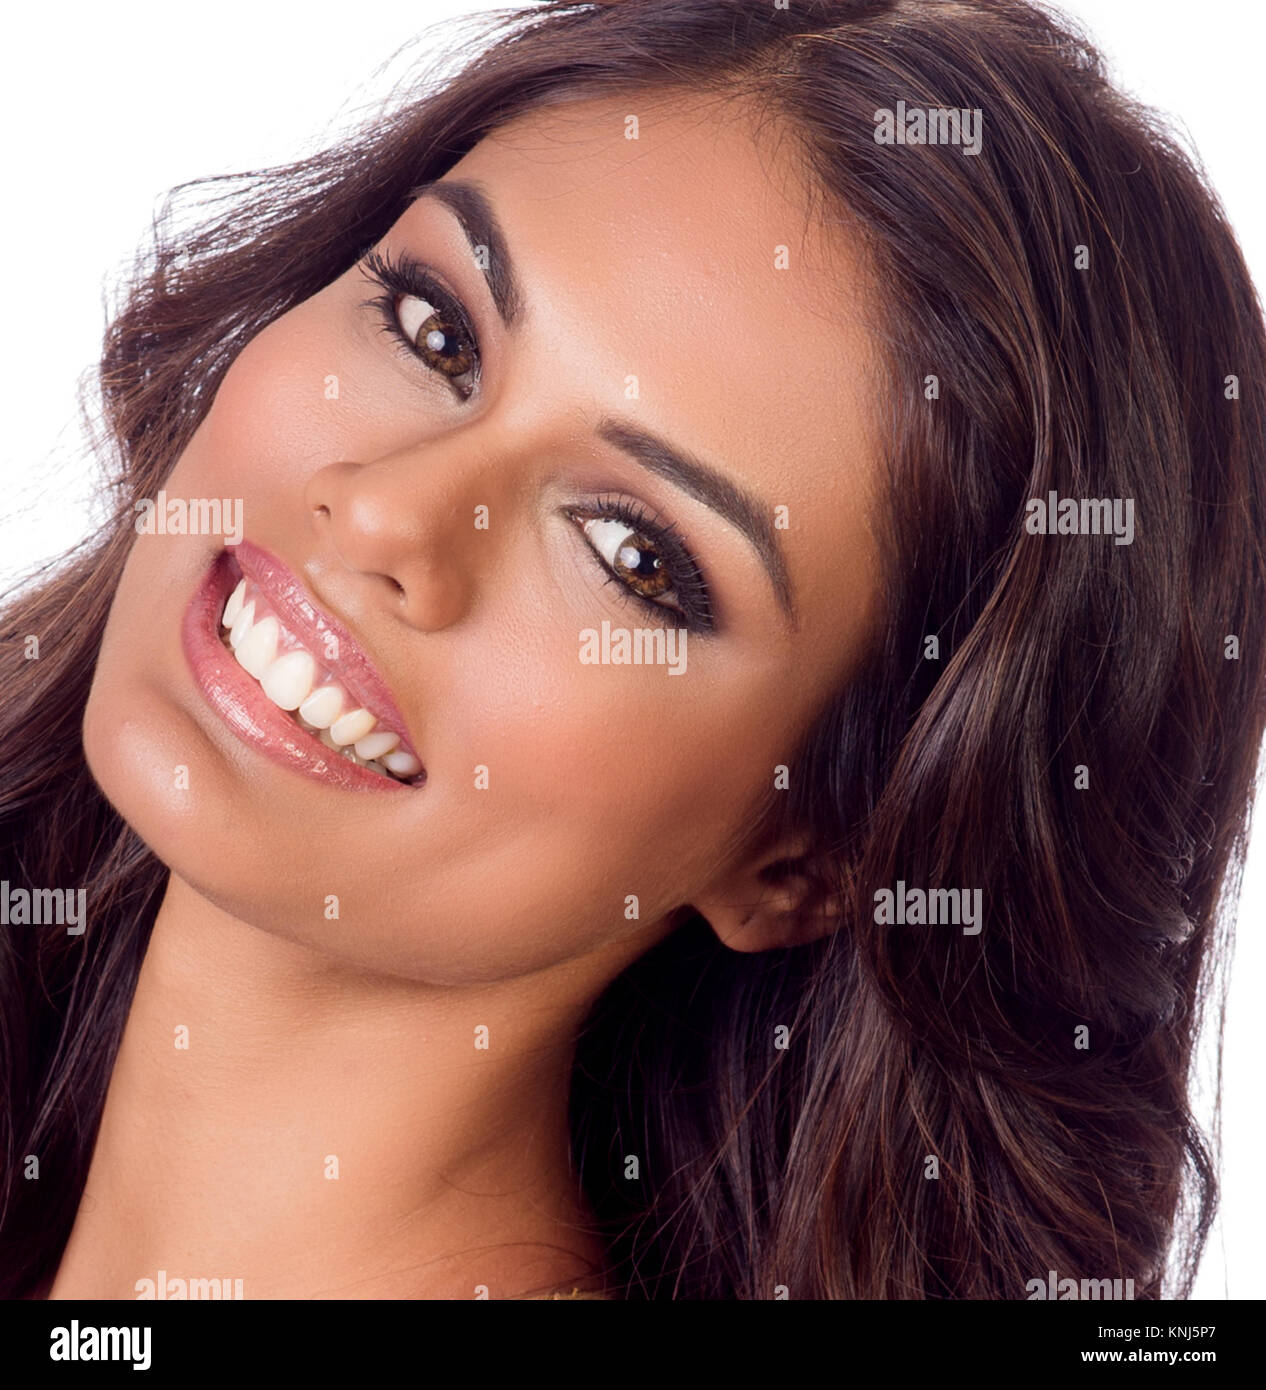 DORAL, FL - JANUARY 20: Headshot of Miss India Noyonita Lodh at Trump National Doral on January 20, 2015 in Doral, Florida.  People:  Miss India Noyonita Lodh Stock Photo